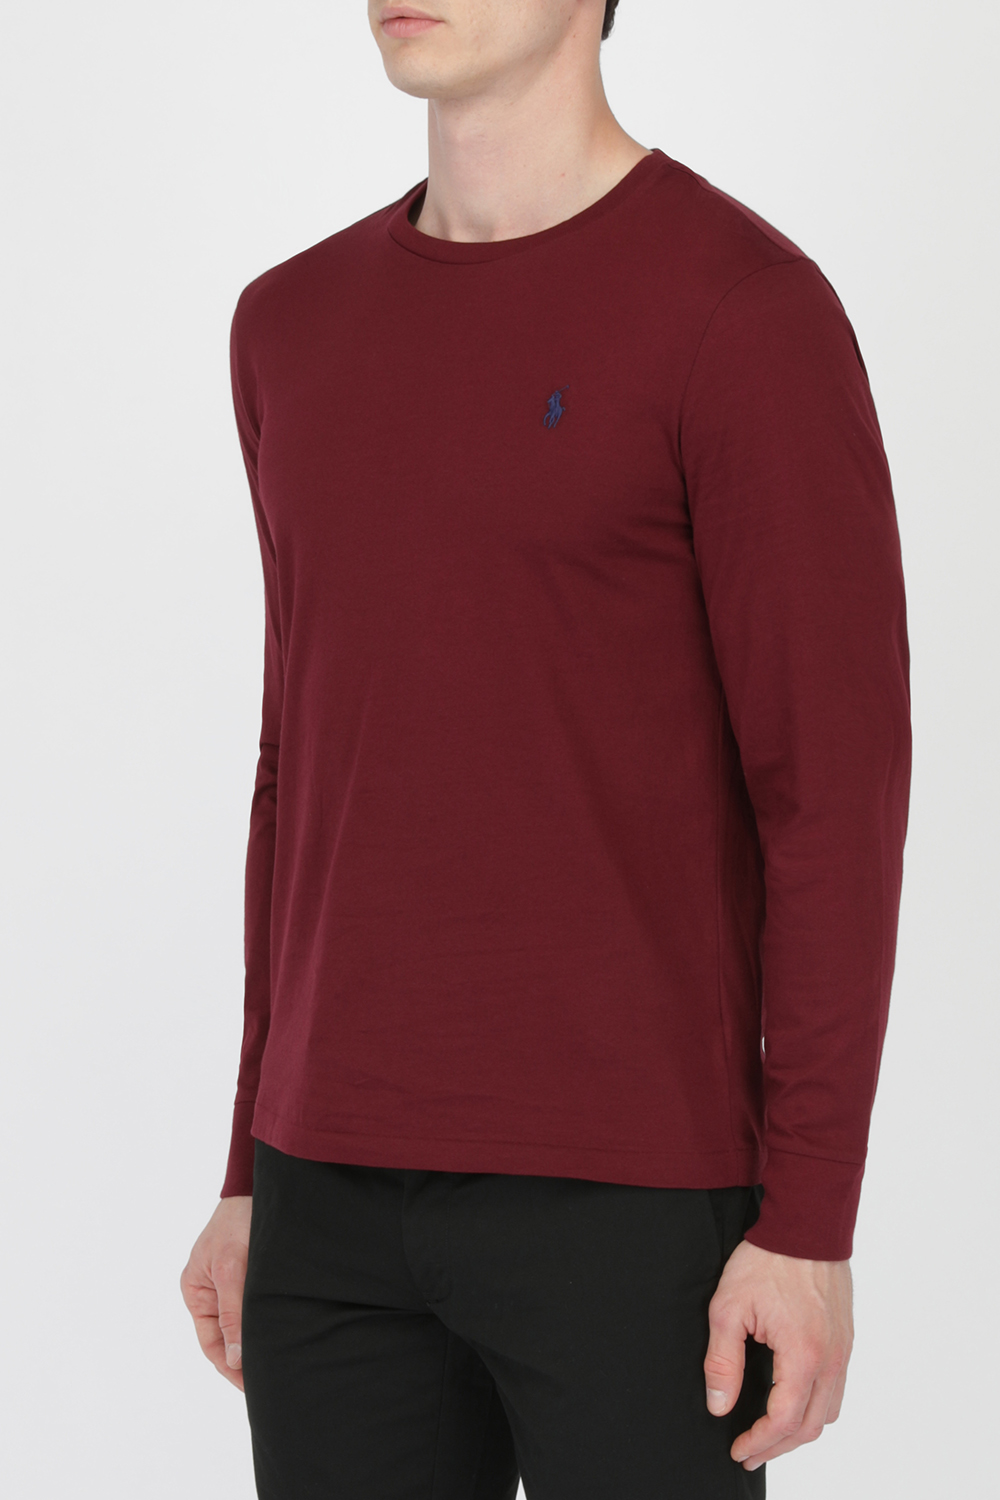 Long Sleeve T-Shirt In Cranberry POLO RALPH LAUREN